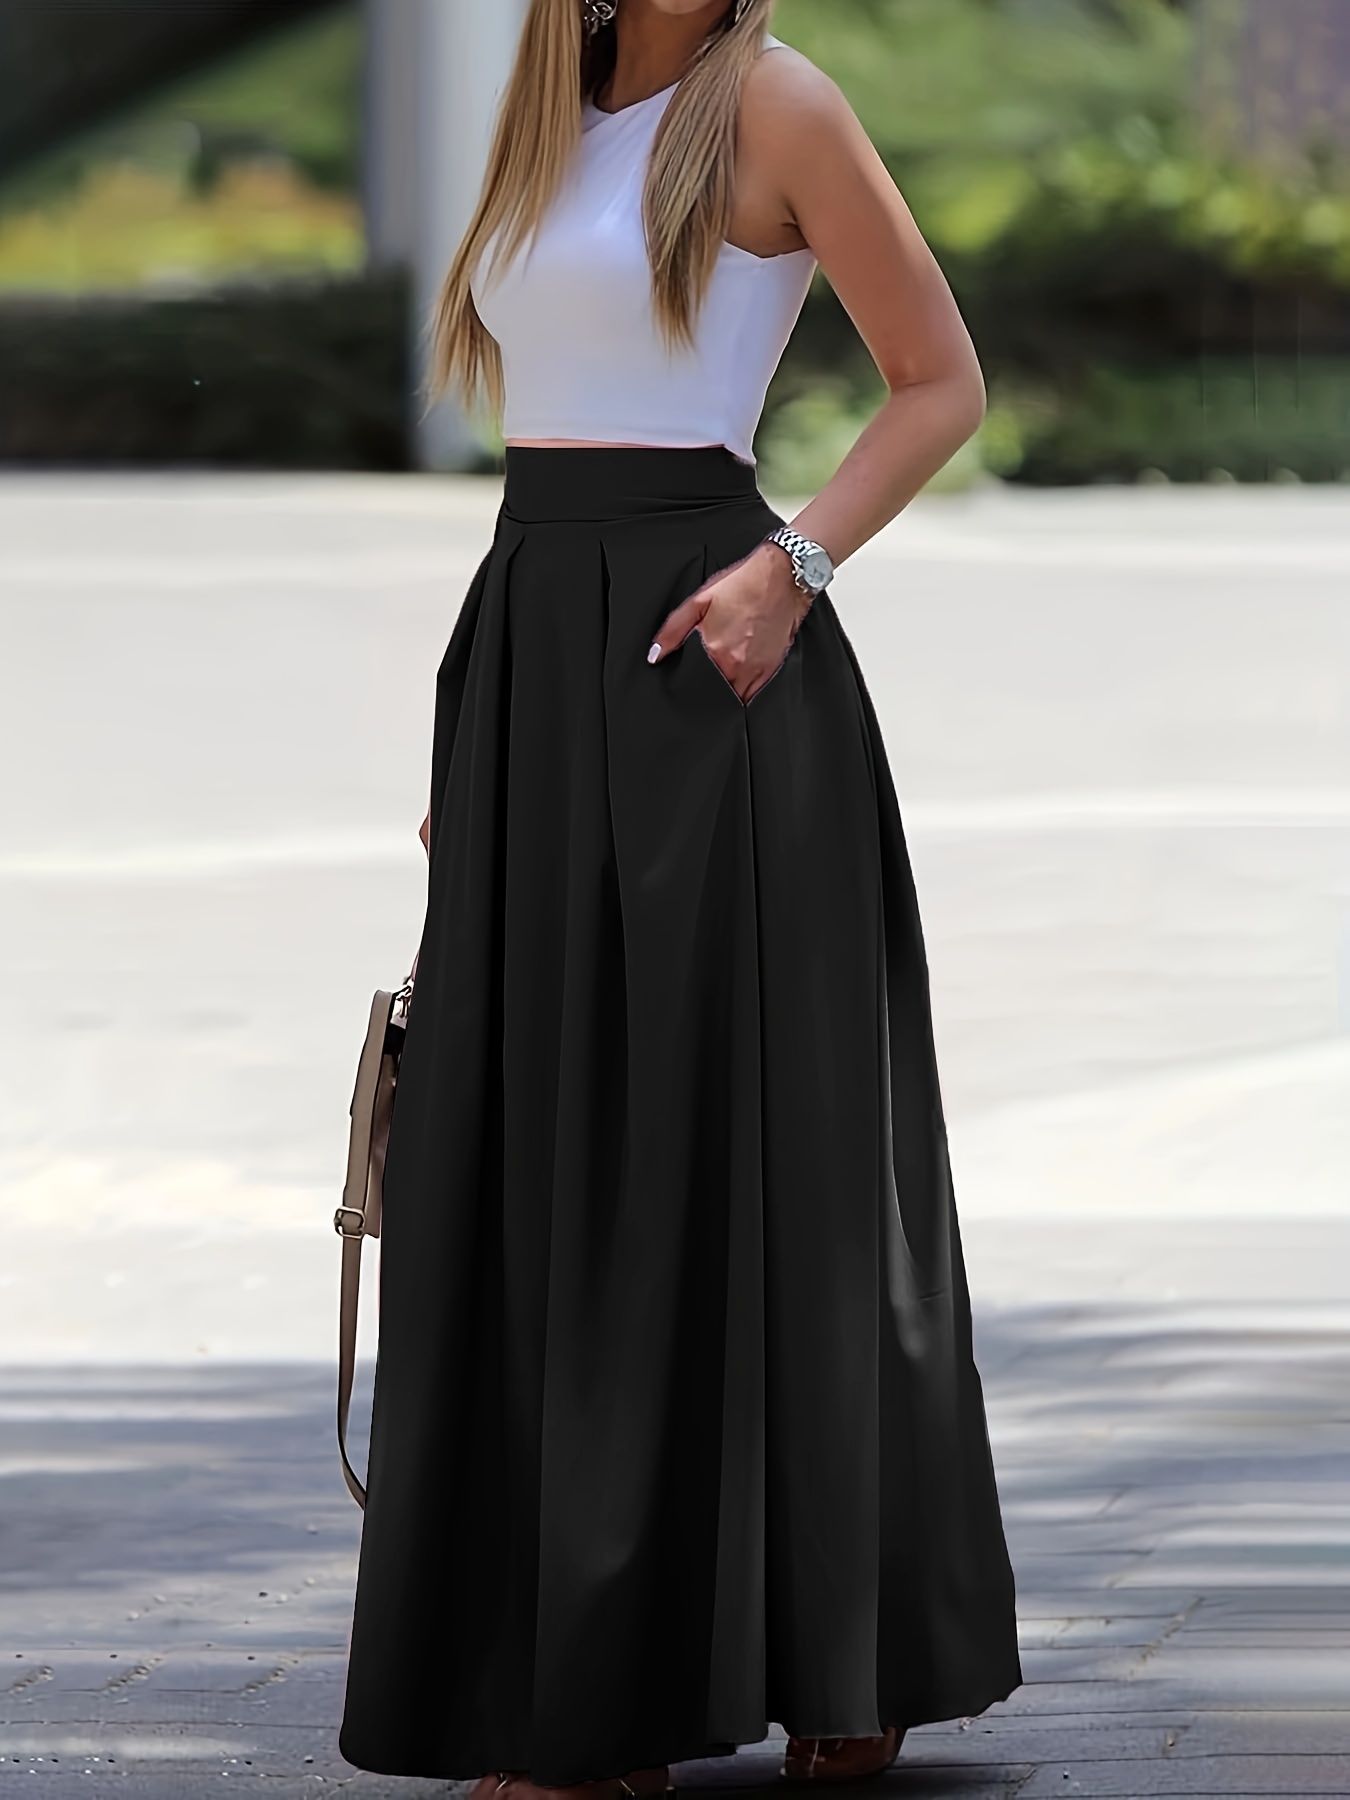 Falda larga negra con florecitas blancas cintura alta- Ropa mujer